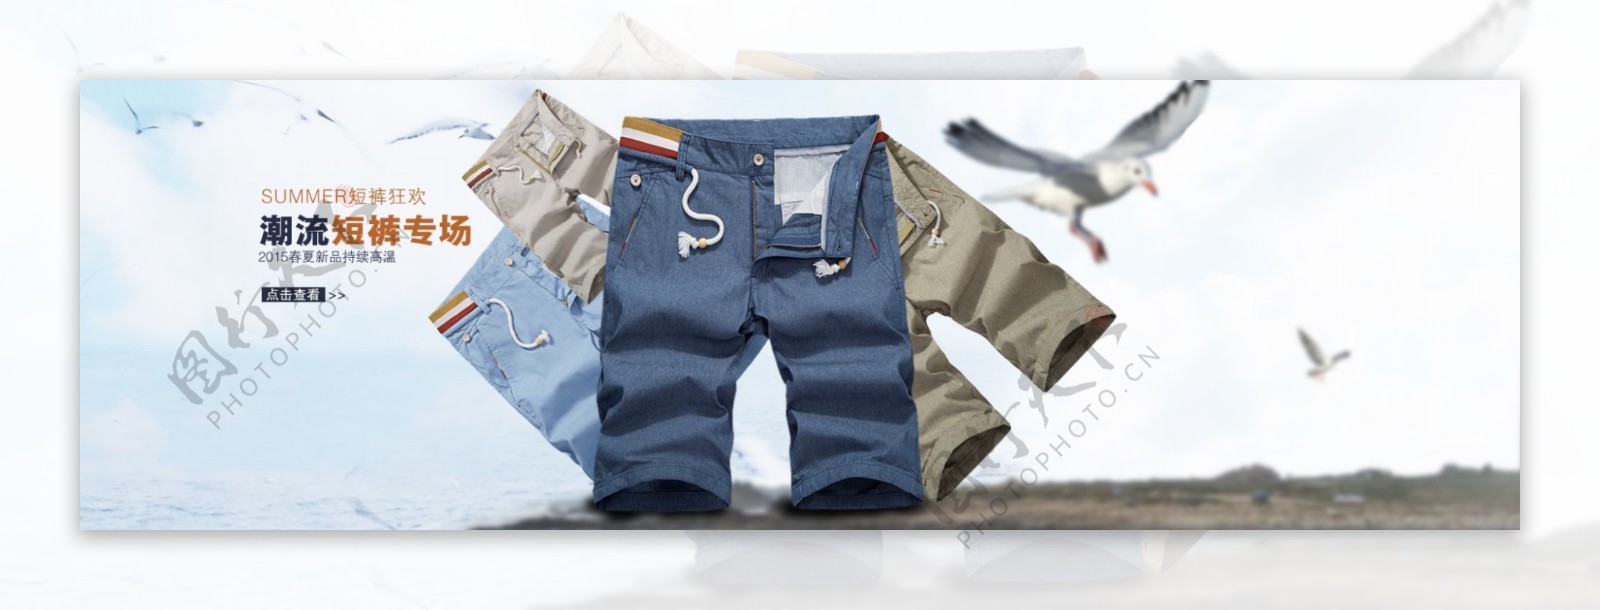 夏季男装时尚短裤创意简洁大气海报排版